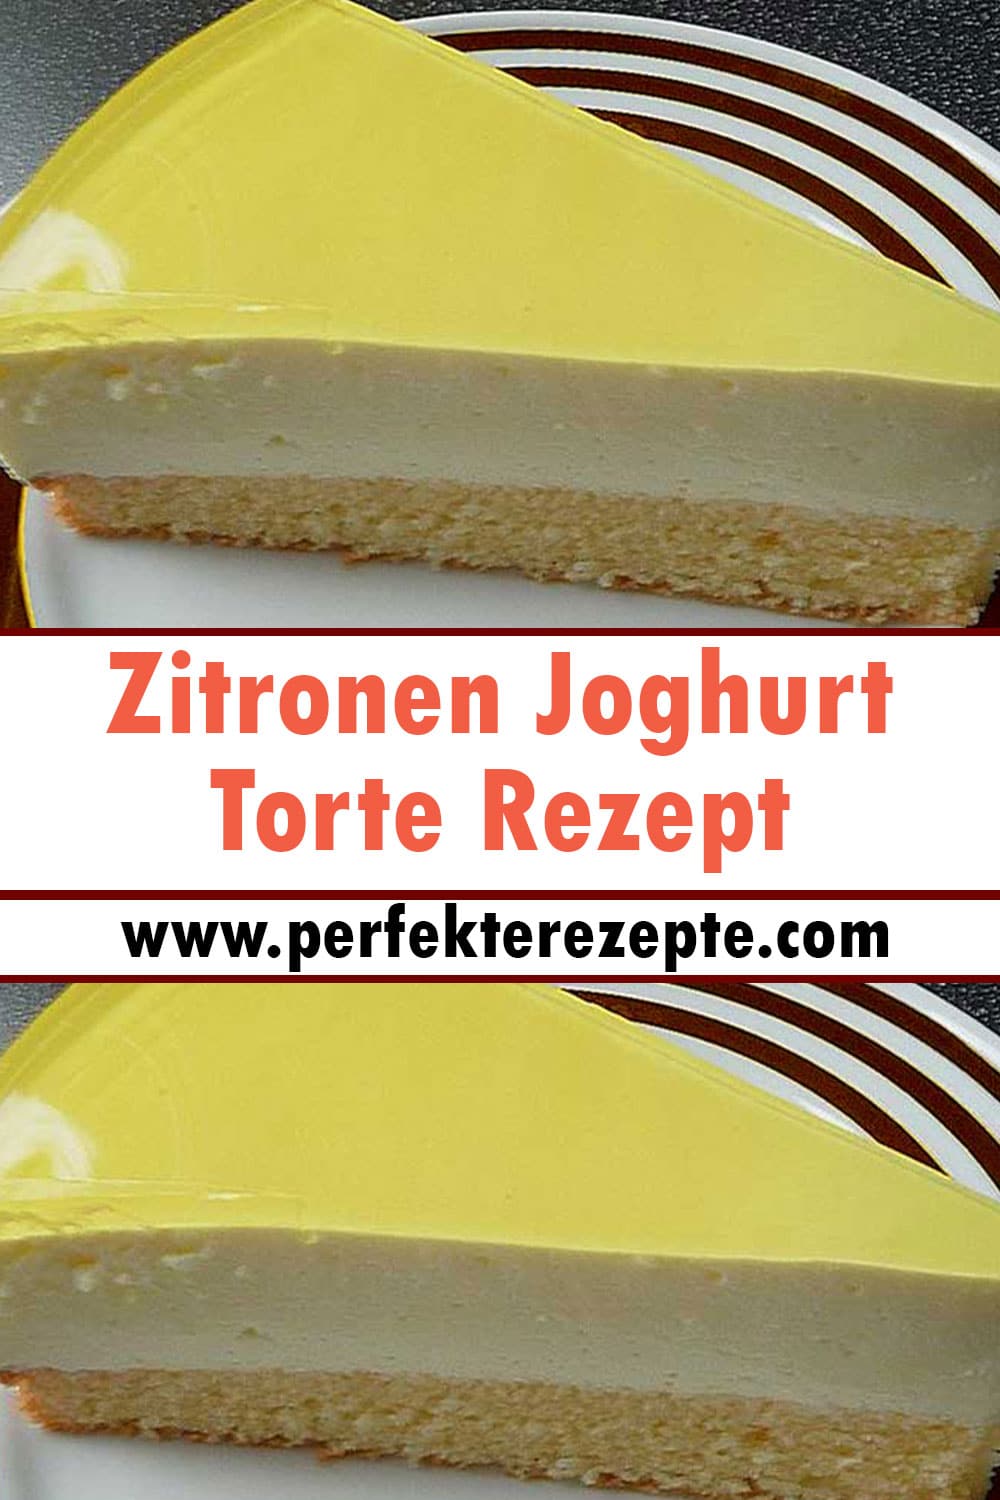 Zitronen Joghurt Torte Rezept